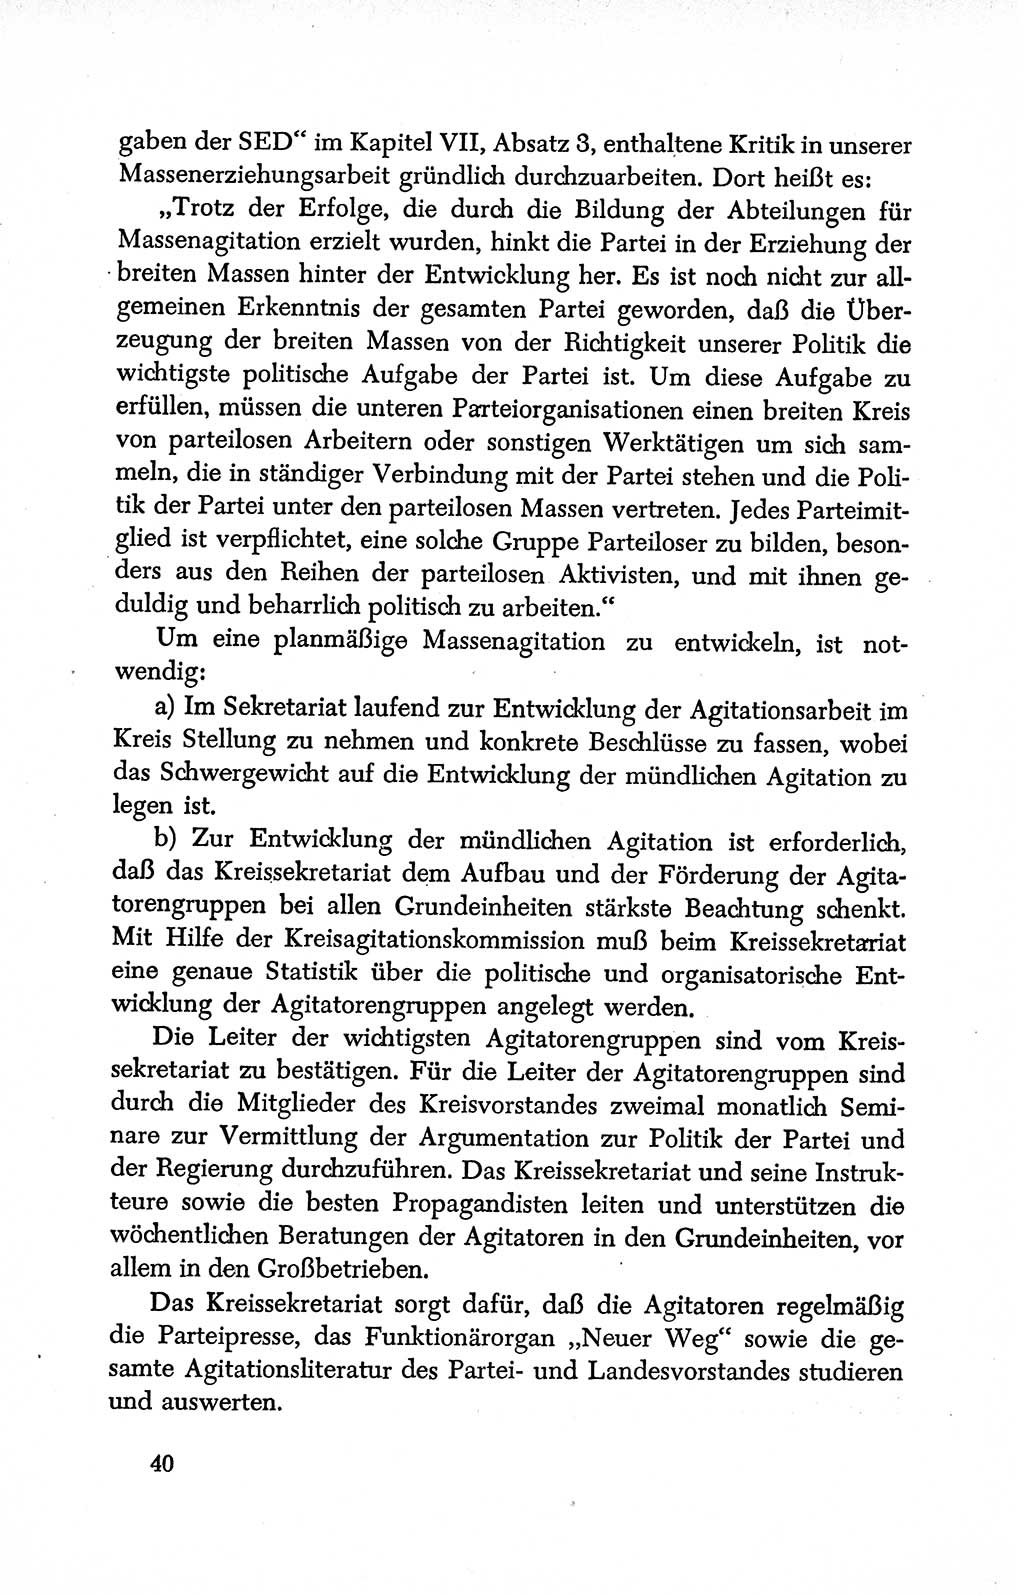 Dokumente der Sozialistischen Einheitspartei Deutschlands (SED) [Deutsche Demokratische Republik (DDR)] 1950-1952, Seite 40 (Dok. SED DDR 1950-1952, S. 40)